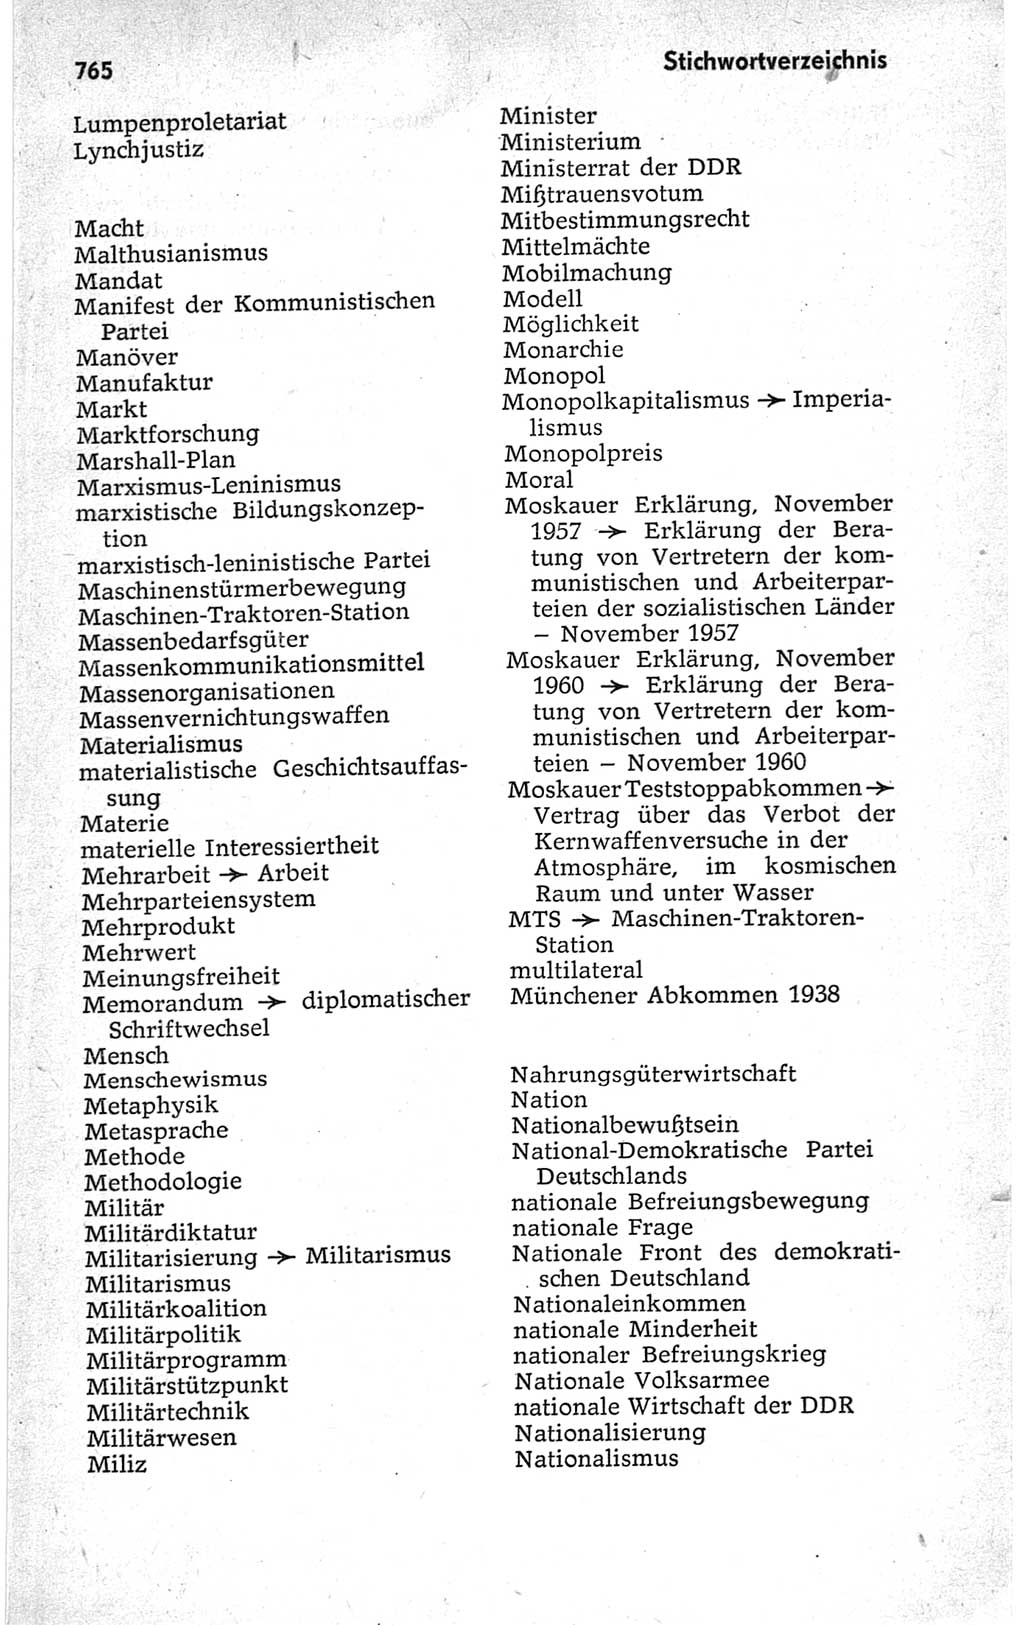 Kleines politisches Wörterbuch [Deutsche Demokratische Republik (DDR)] 1967, Seite 765 (Kl. pol. Wb. DDR 1967, S. 765)